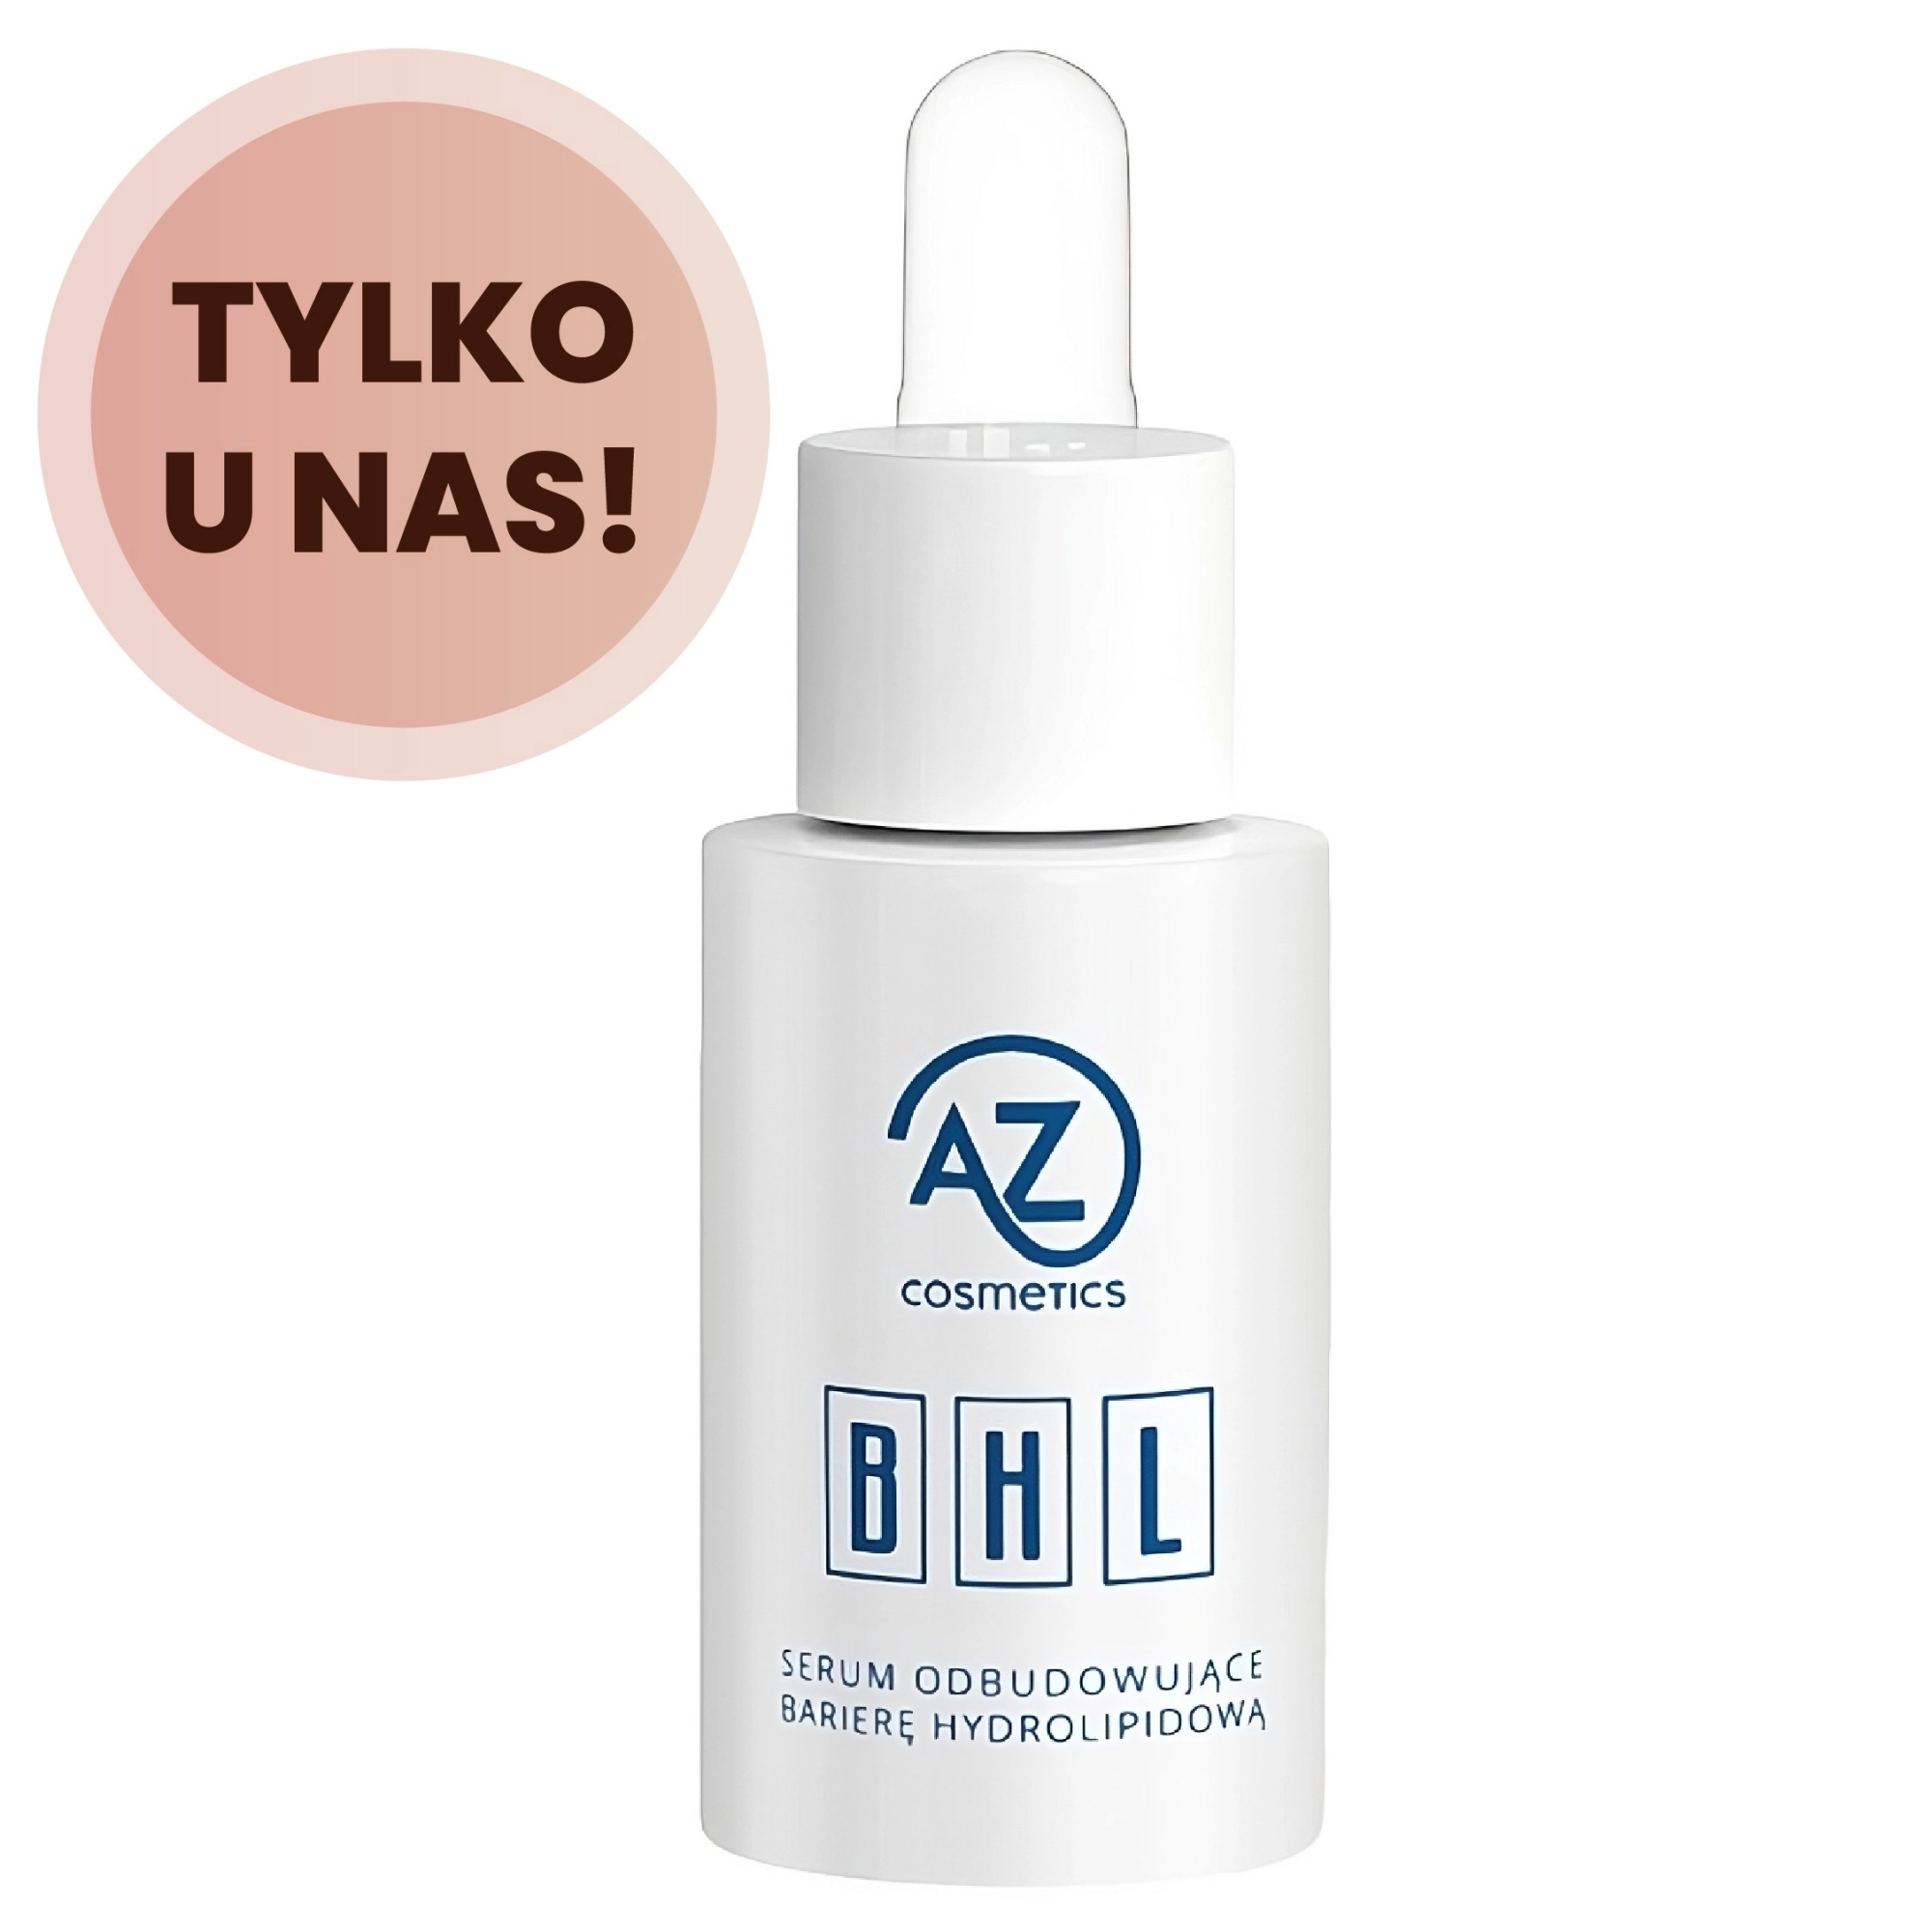 Autorskie Serum Odbudowujące Barierę Hydrolipidową Skóry - AZ Cosmetics  SkinWisdom.pl